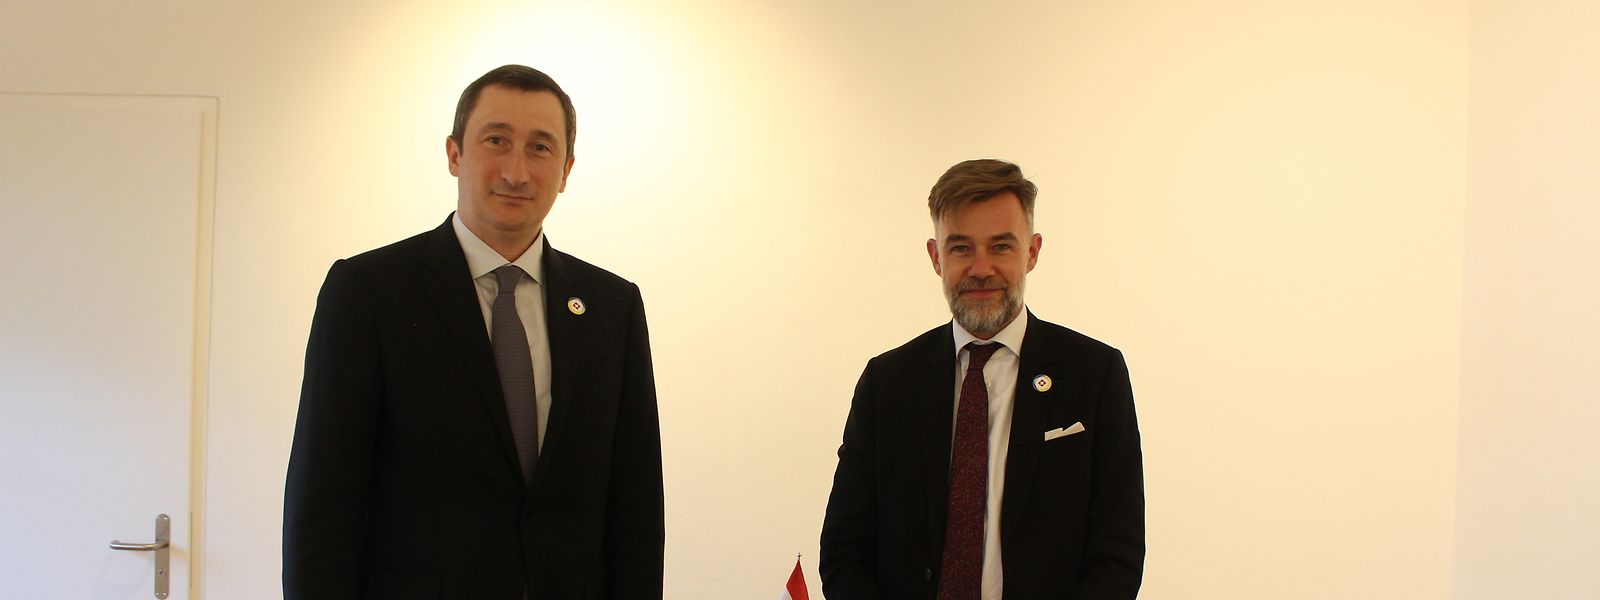 Franz Fayot, ministre de la Coopération et de l’Action humanitaire, a rencontré  Oleksiy Chernyshov, ministre du Développement régional de l’Ukraine, en marge de la conférence internationale.